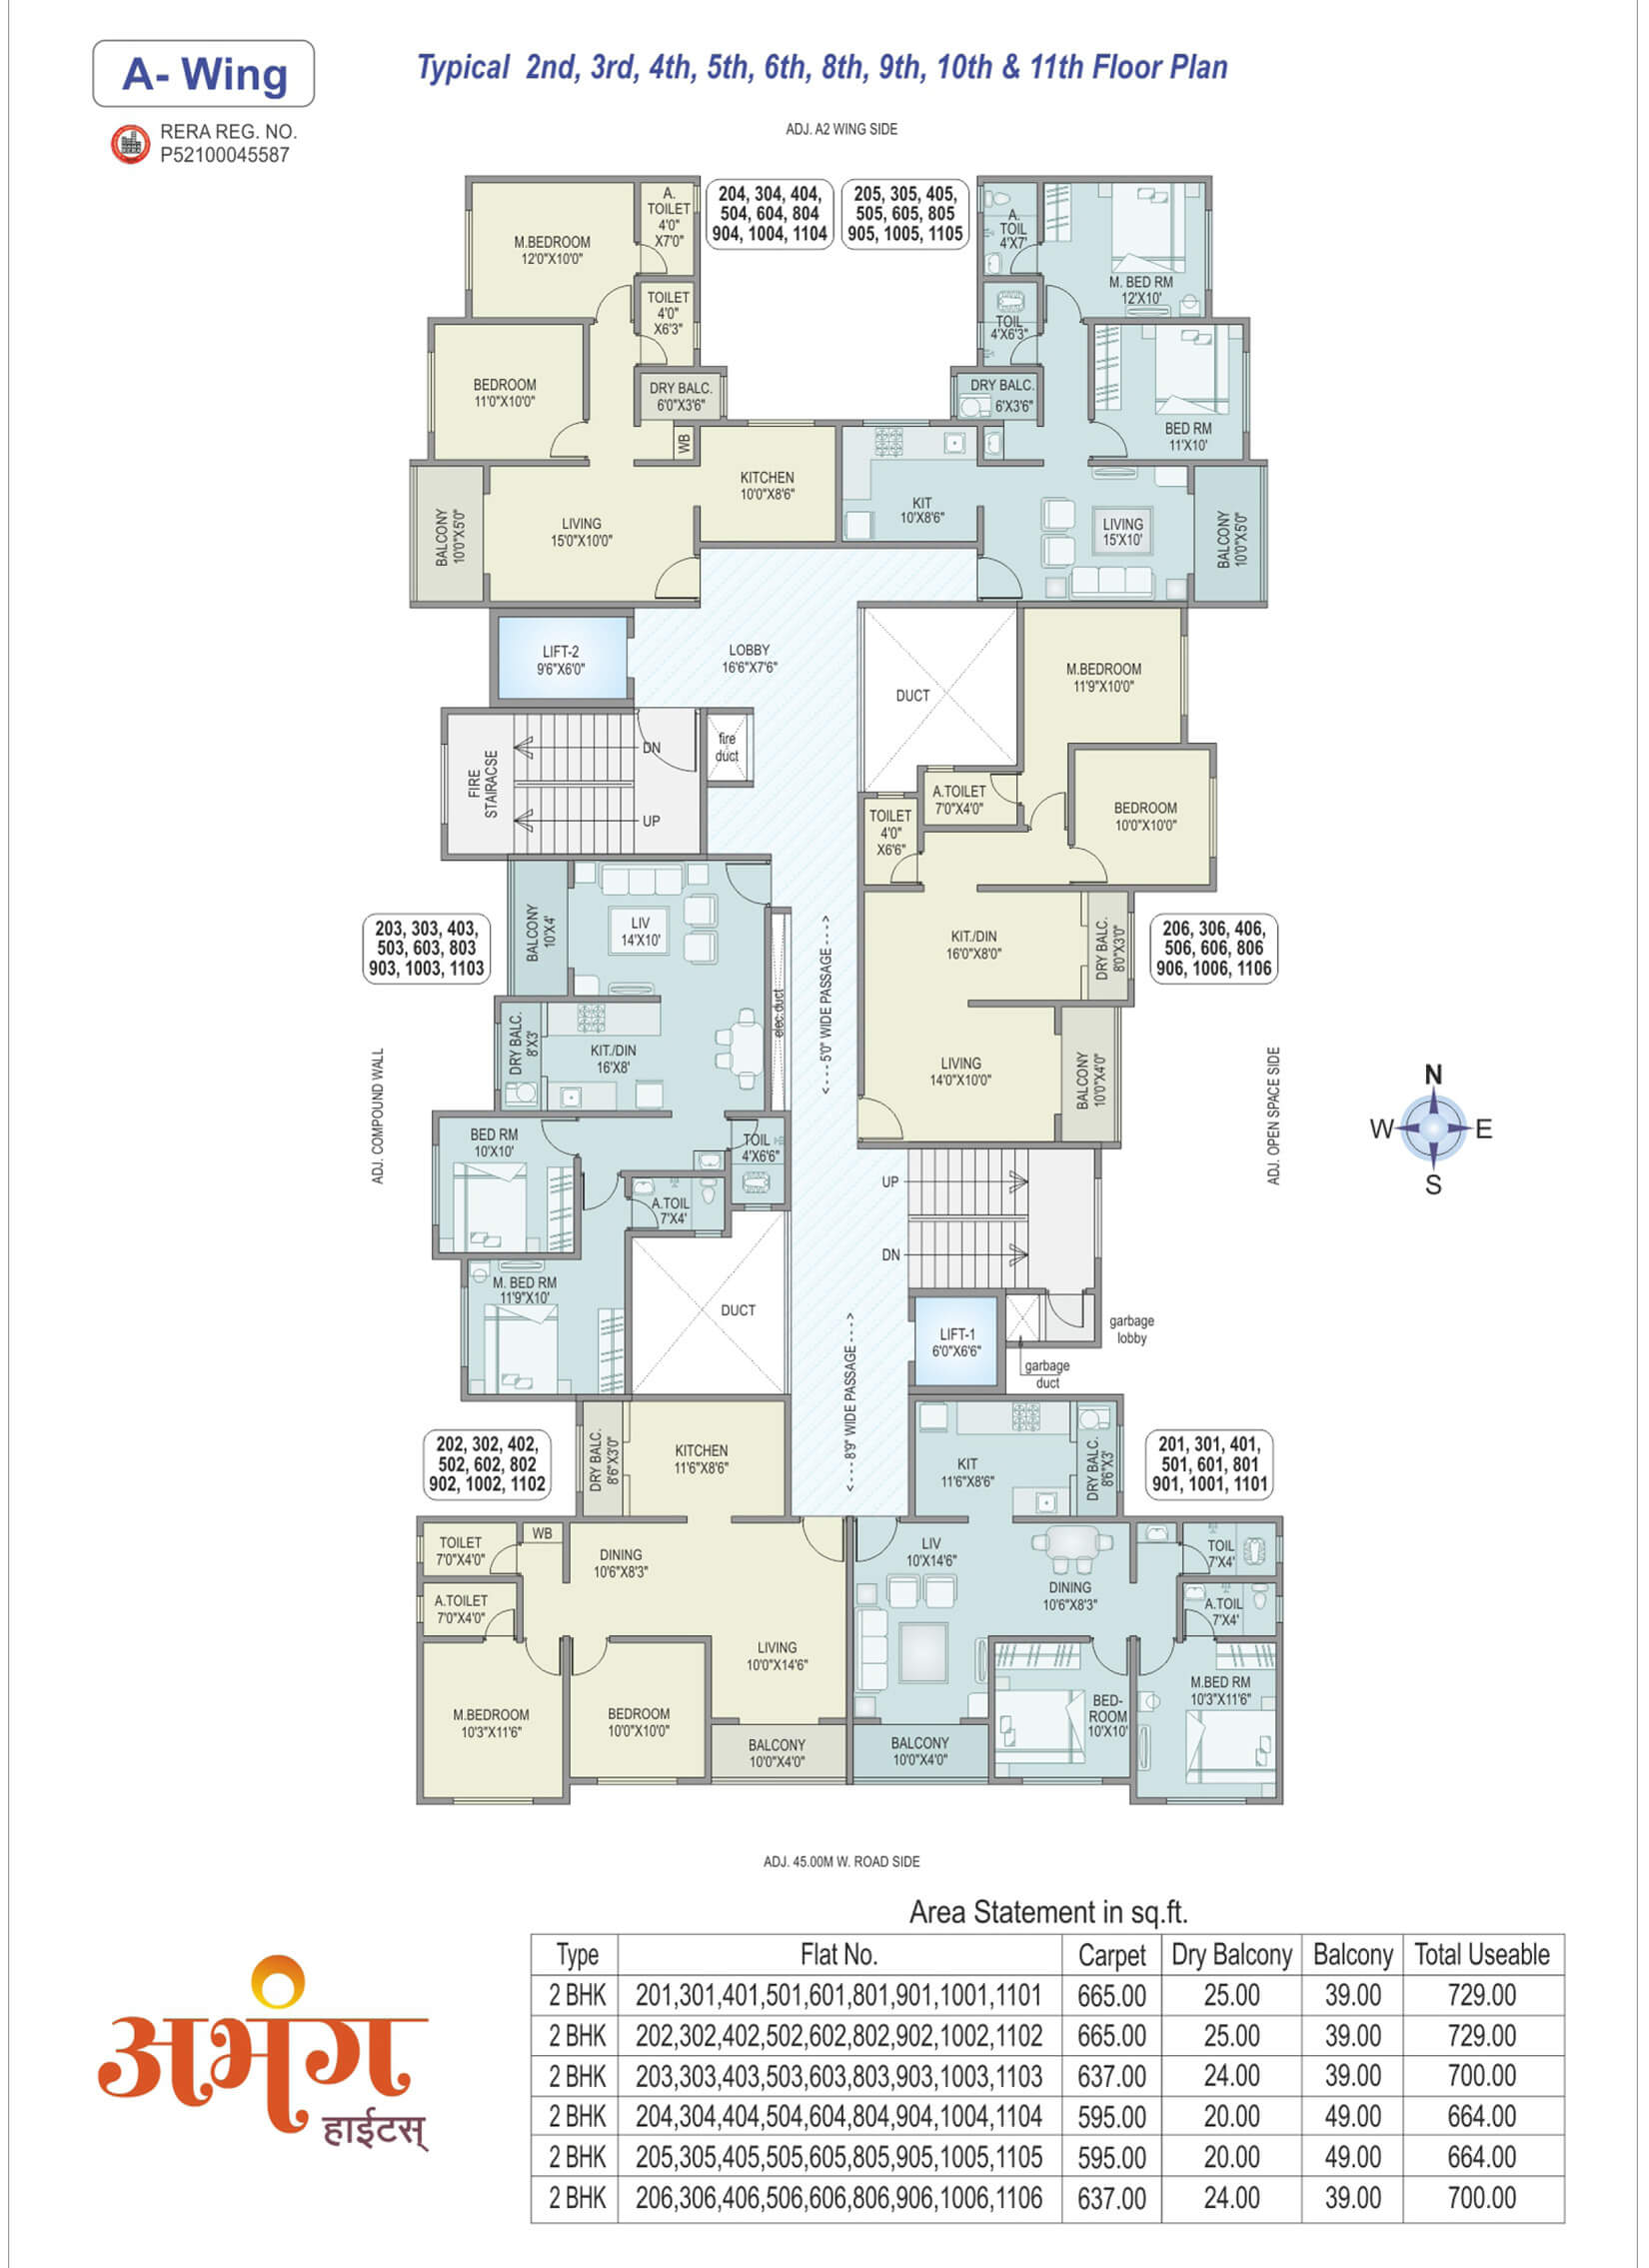 Abhang Heights - 2,3,4,5,6,8,9,10,11 Floor Plan